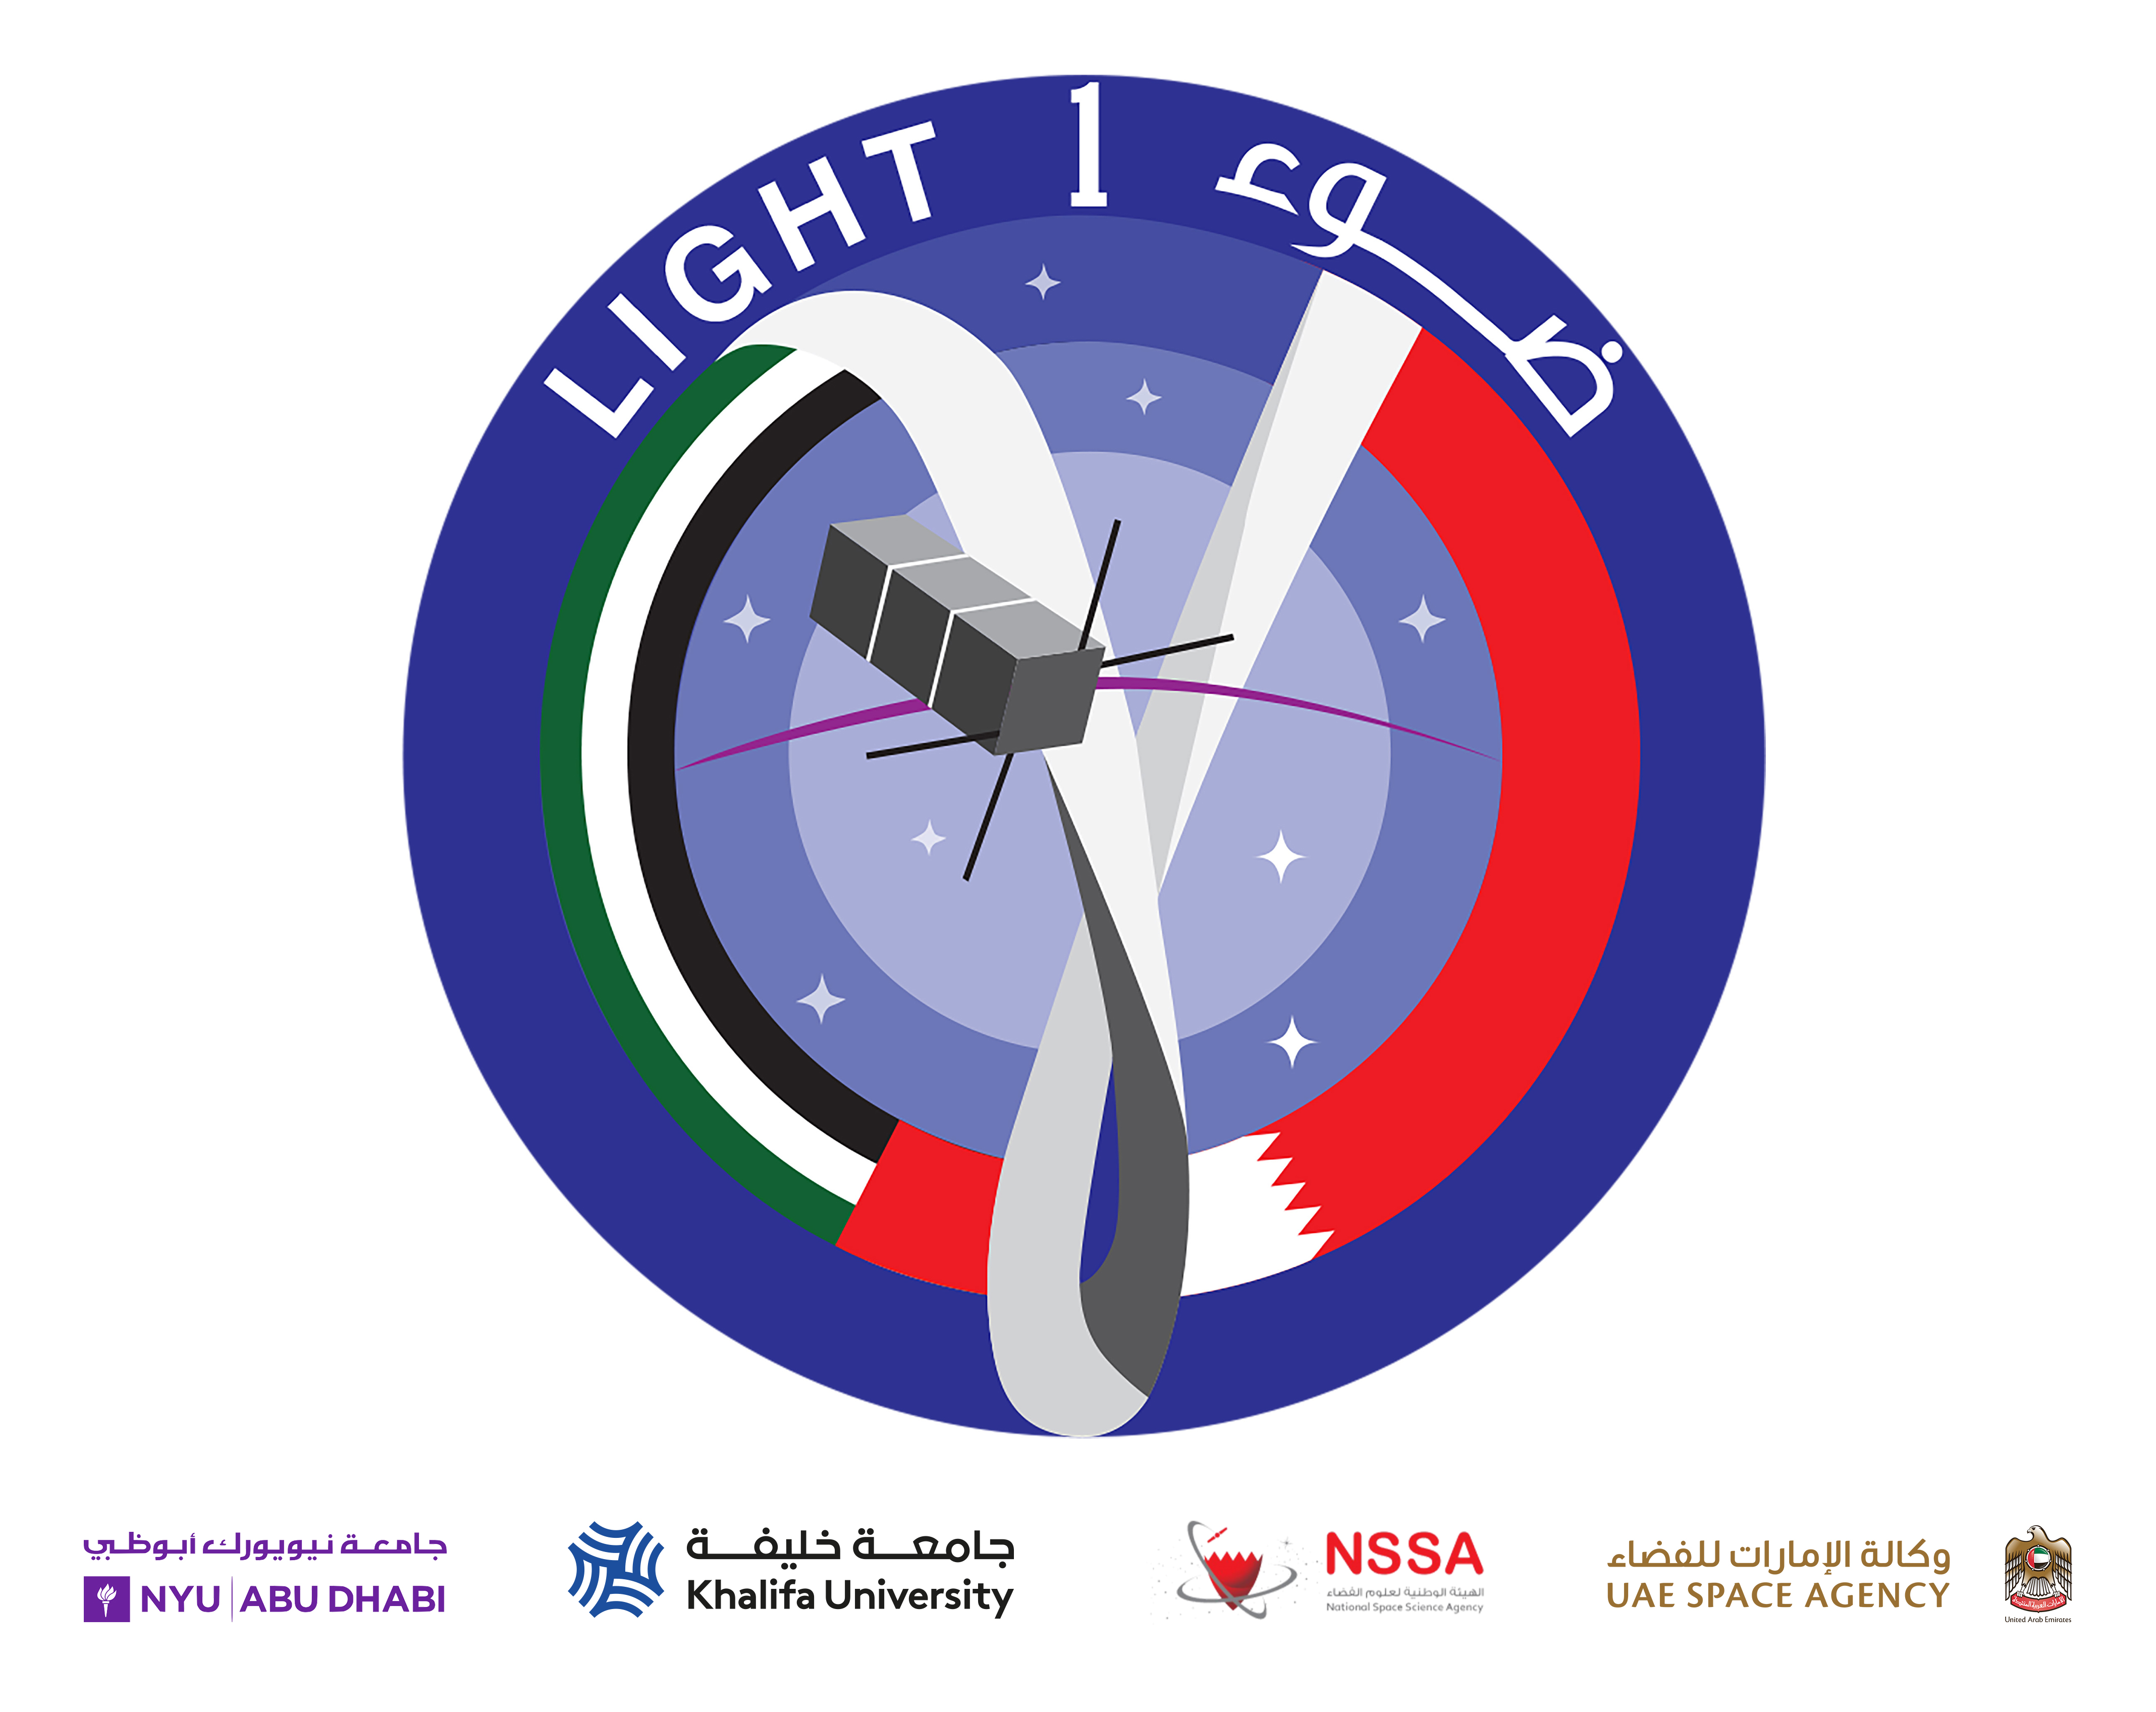 Joint UAE-Bahraini nanosatellite Light-1 set to launch on 21st December